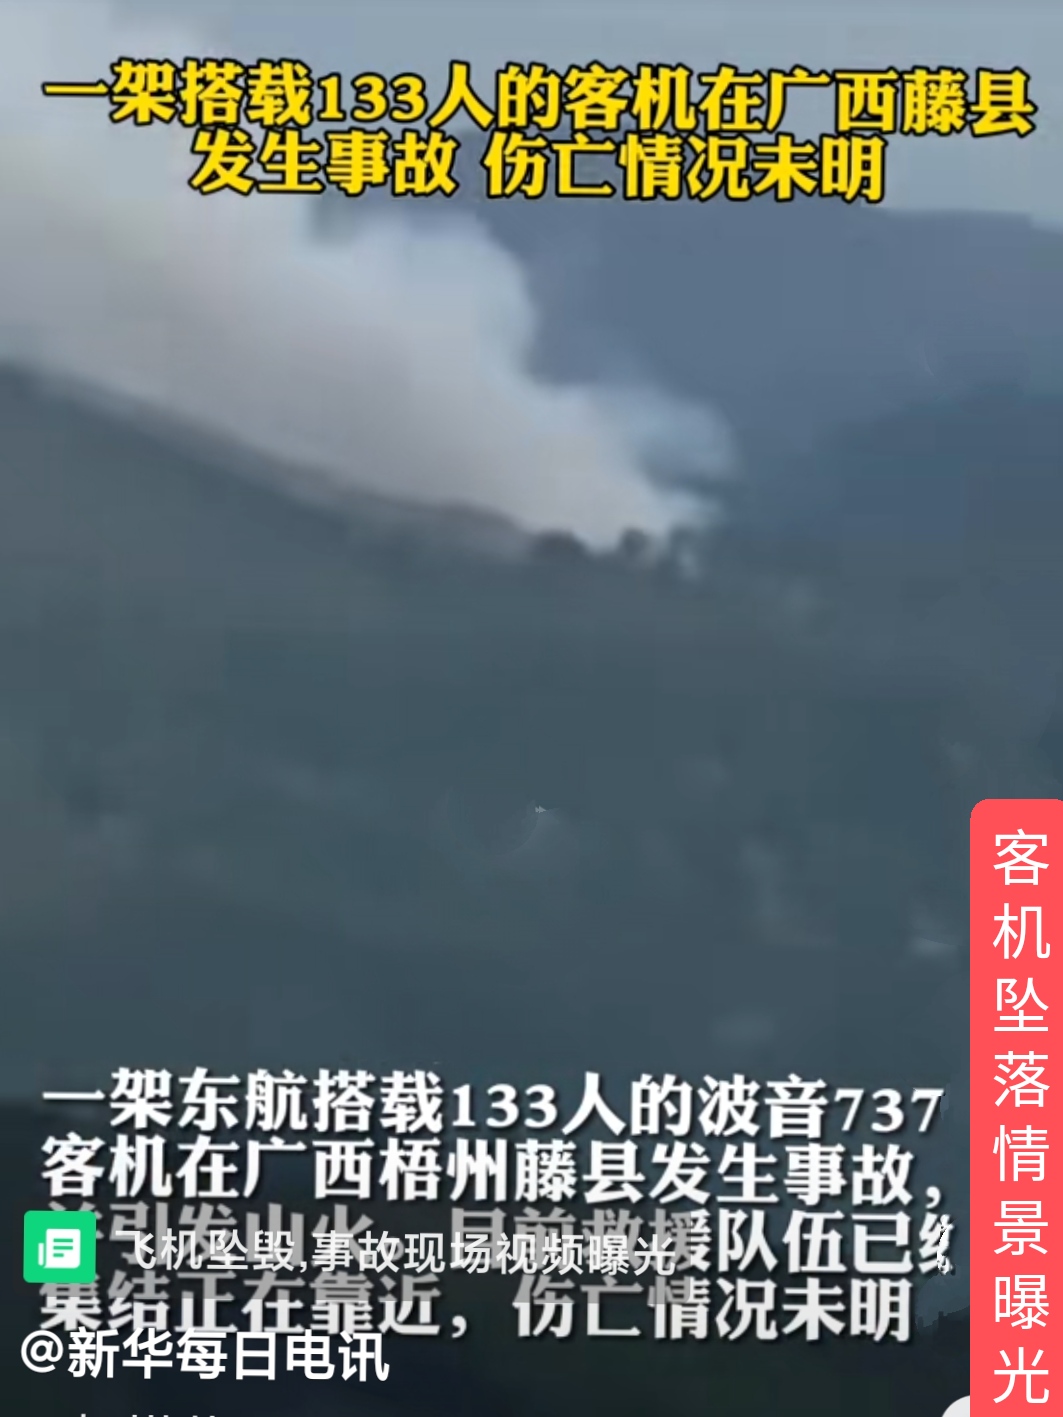 广西藤县飞机事故图片